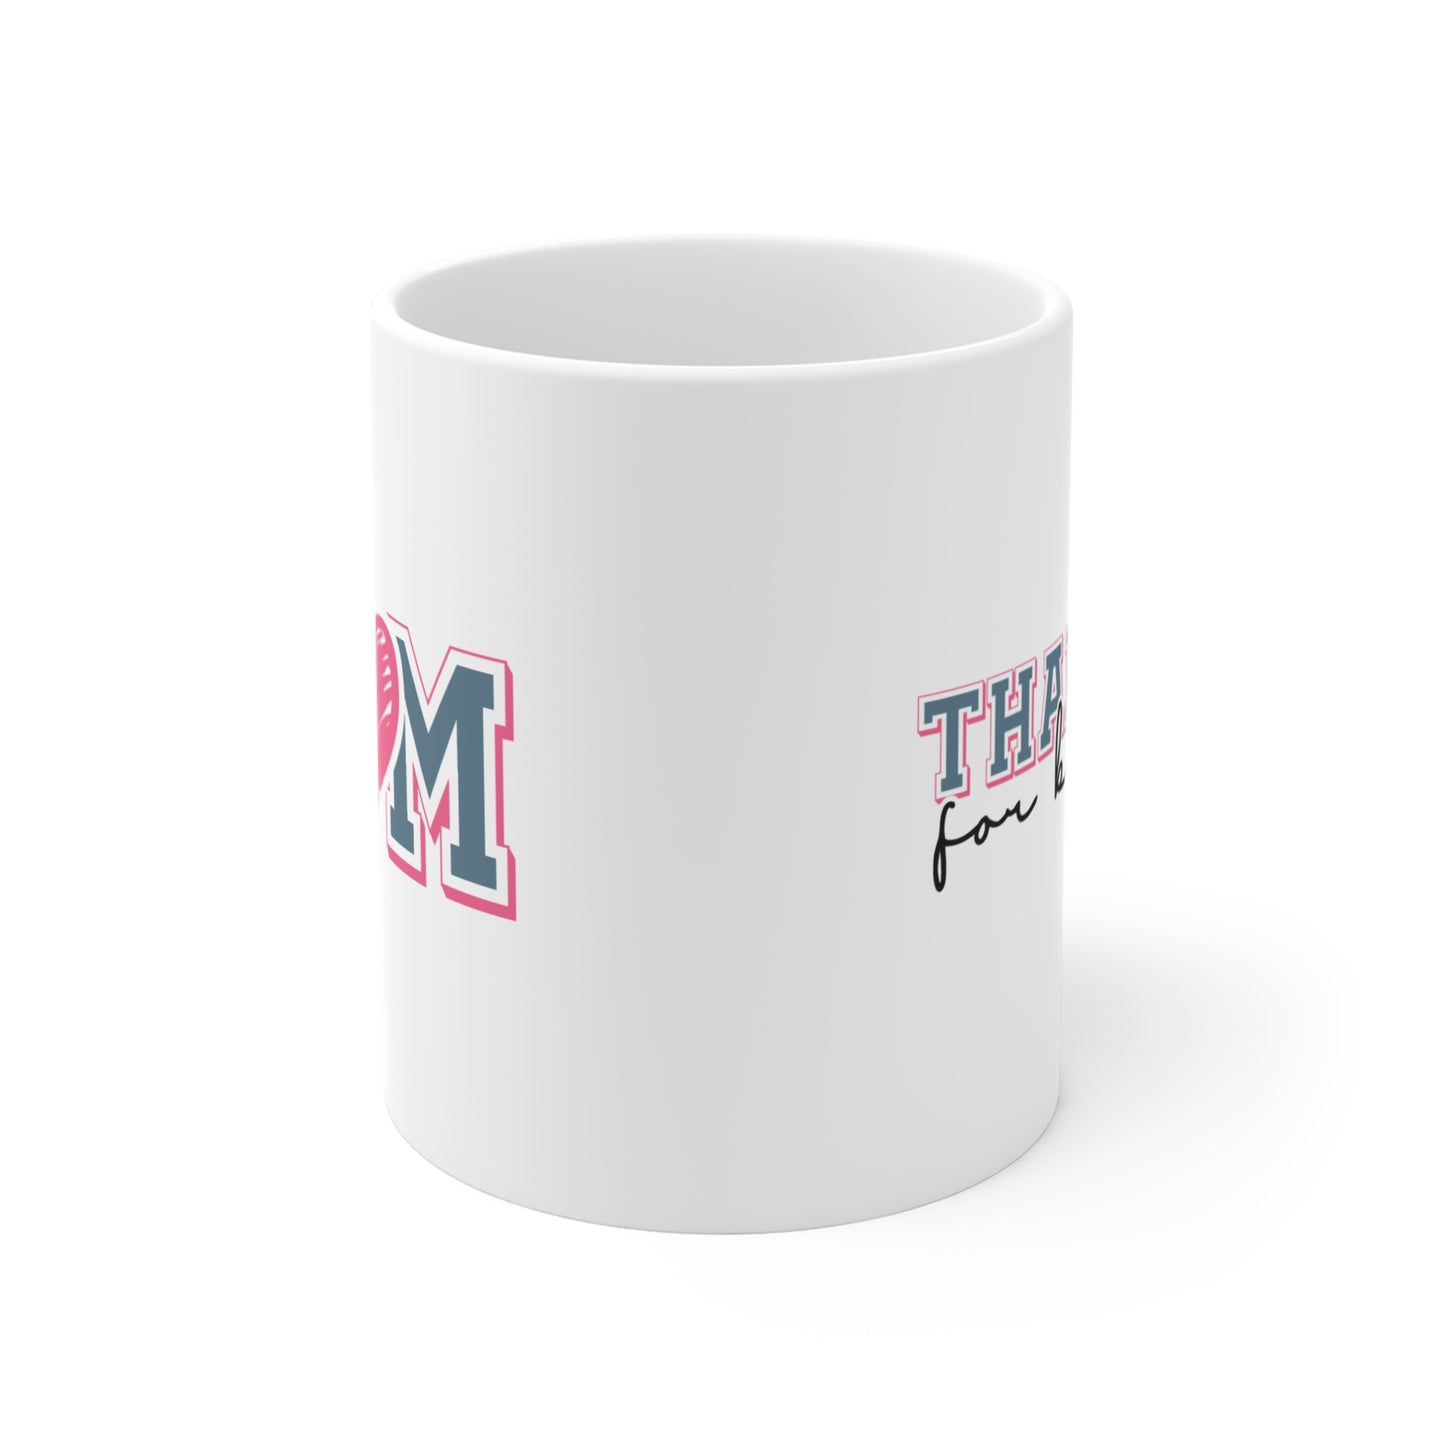 Mom Mug, Mother's Day Mug, Mothers Day Mug, White with and Pink Heart Mug, Pink Heart "Mom" Mug, Gift